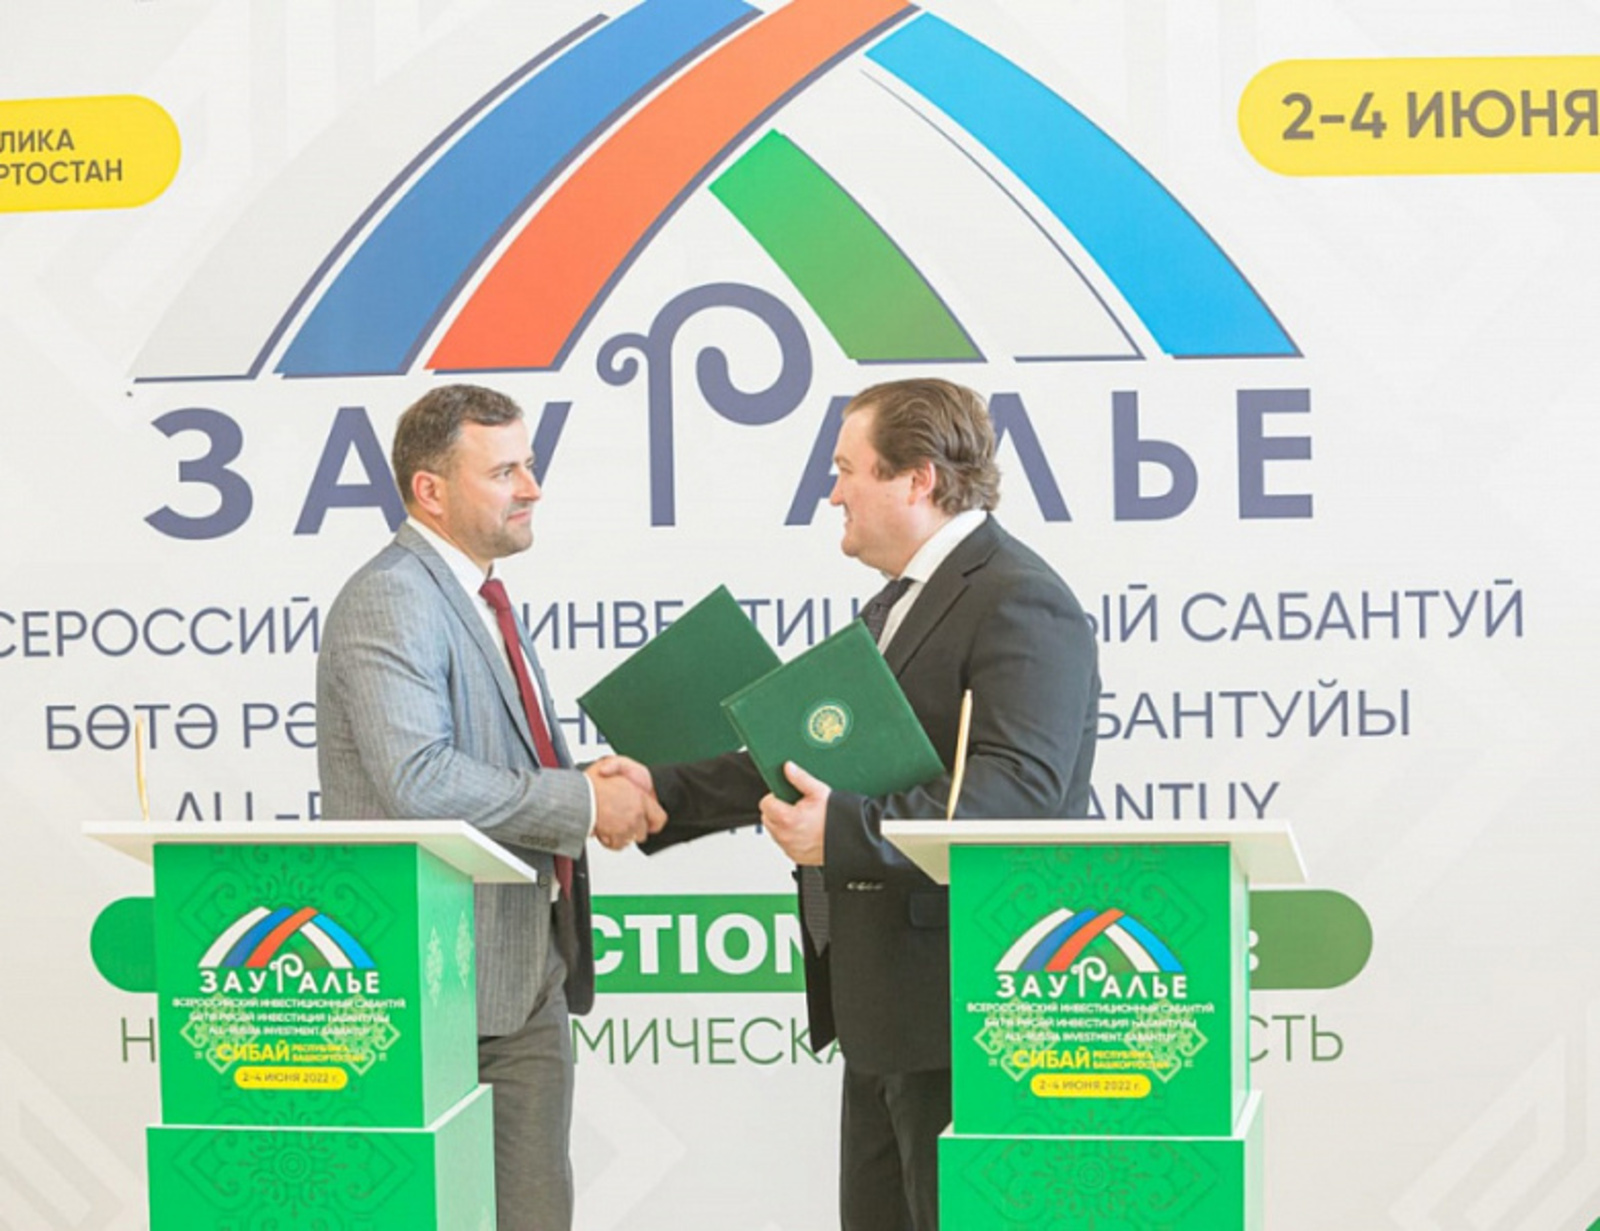 Корпорация развития Башкортостана подписала Соглашение о сотрудничестве с одним из крупнейших операторов связи в республике